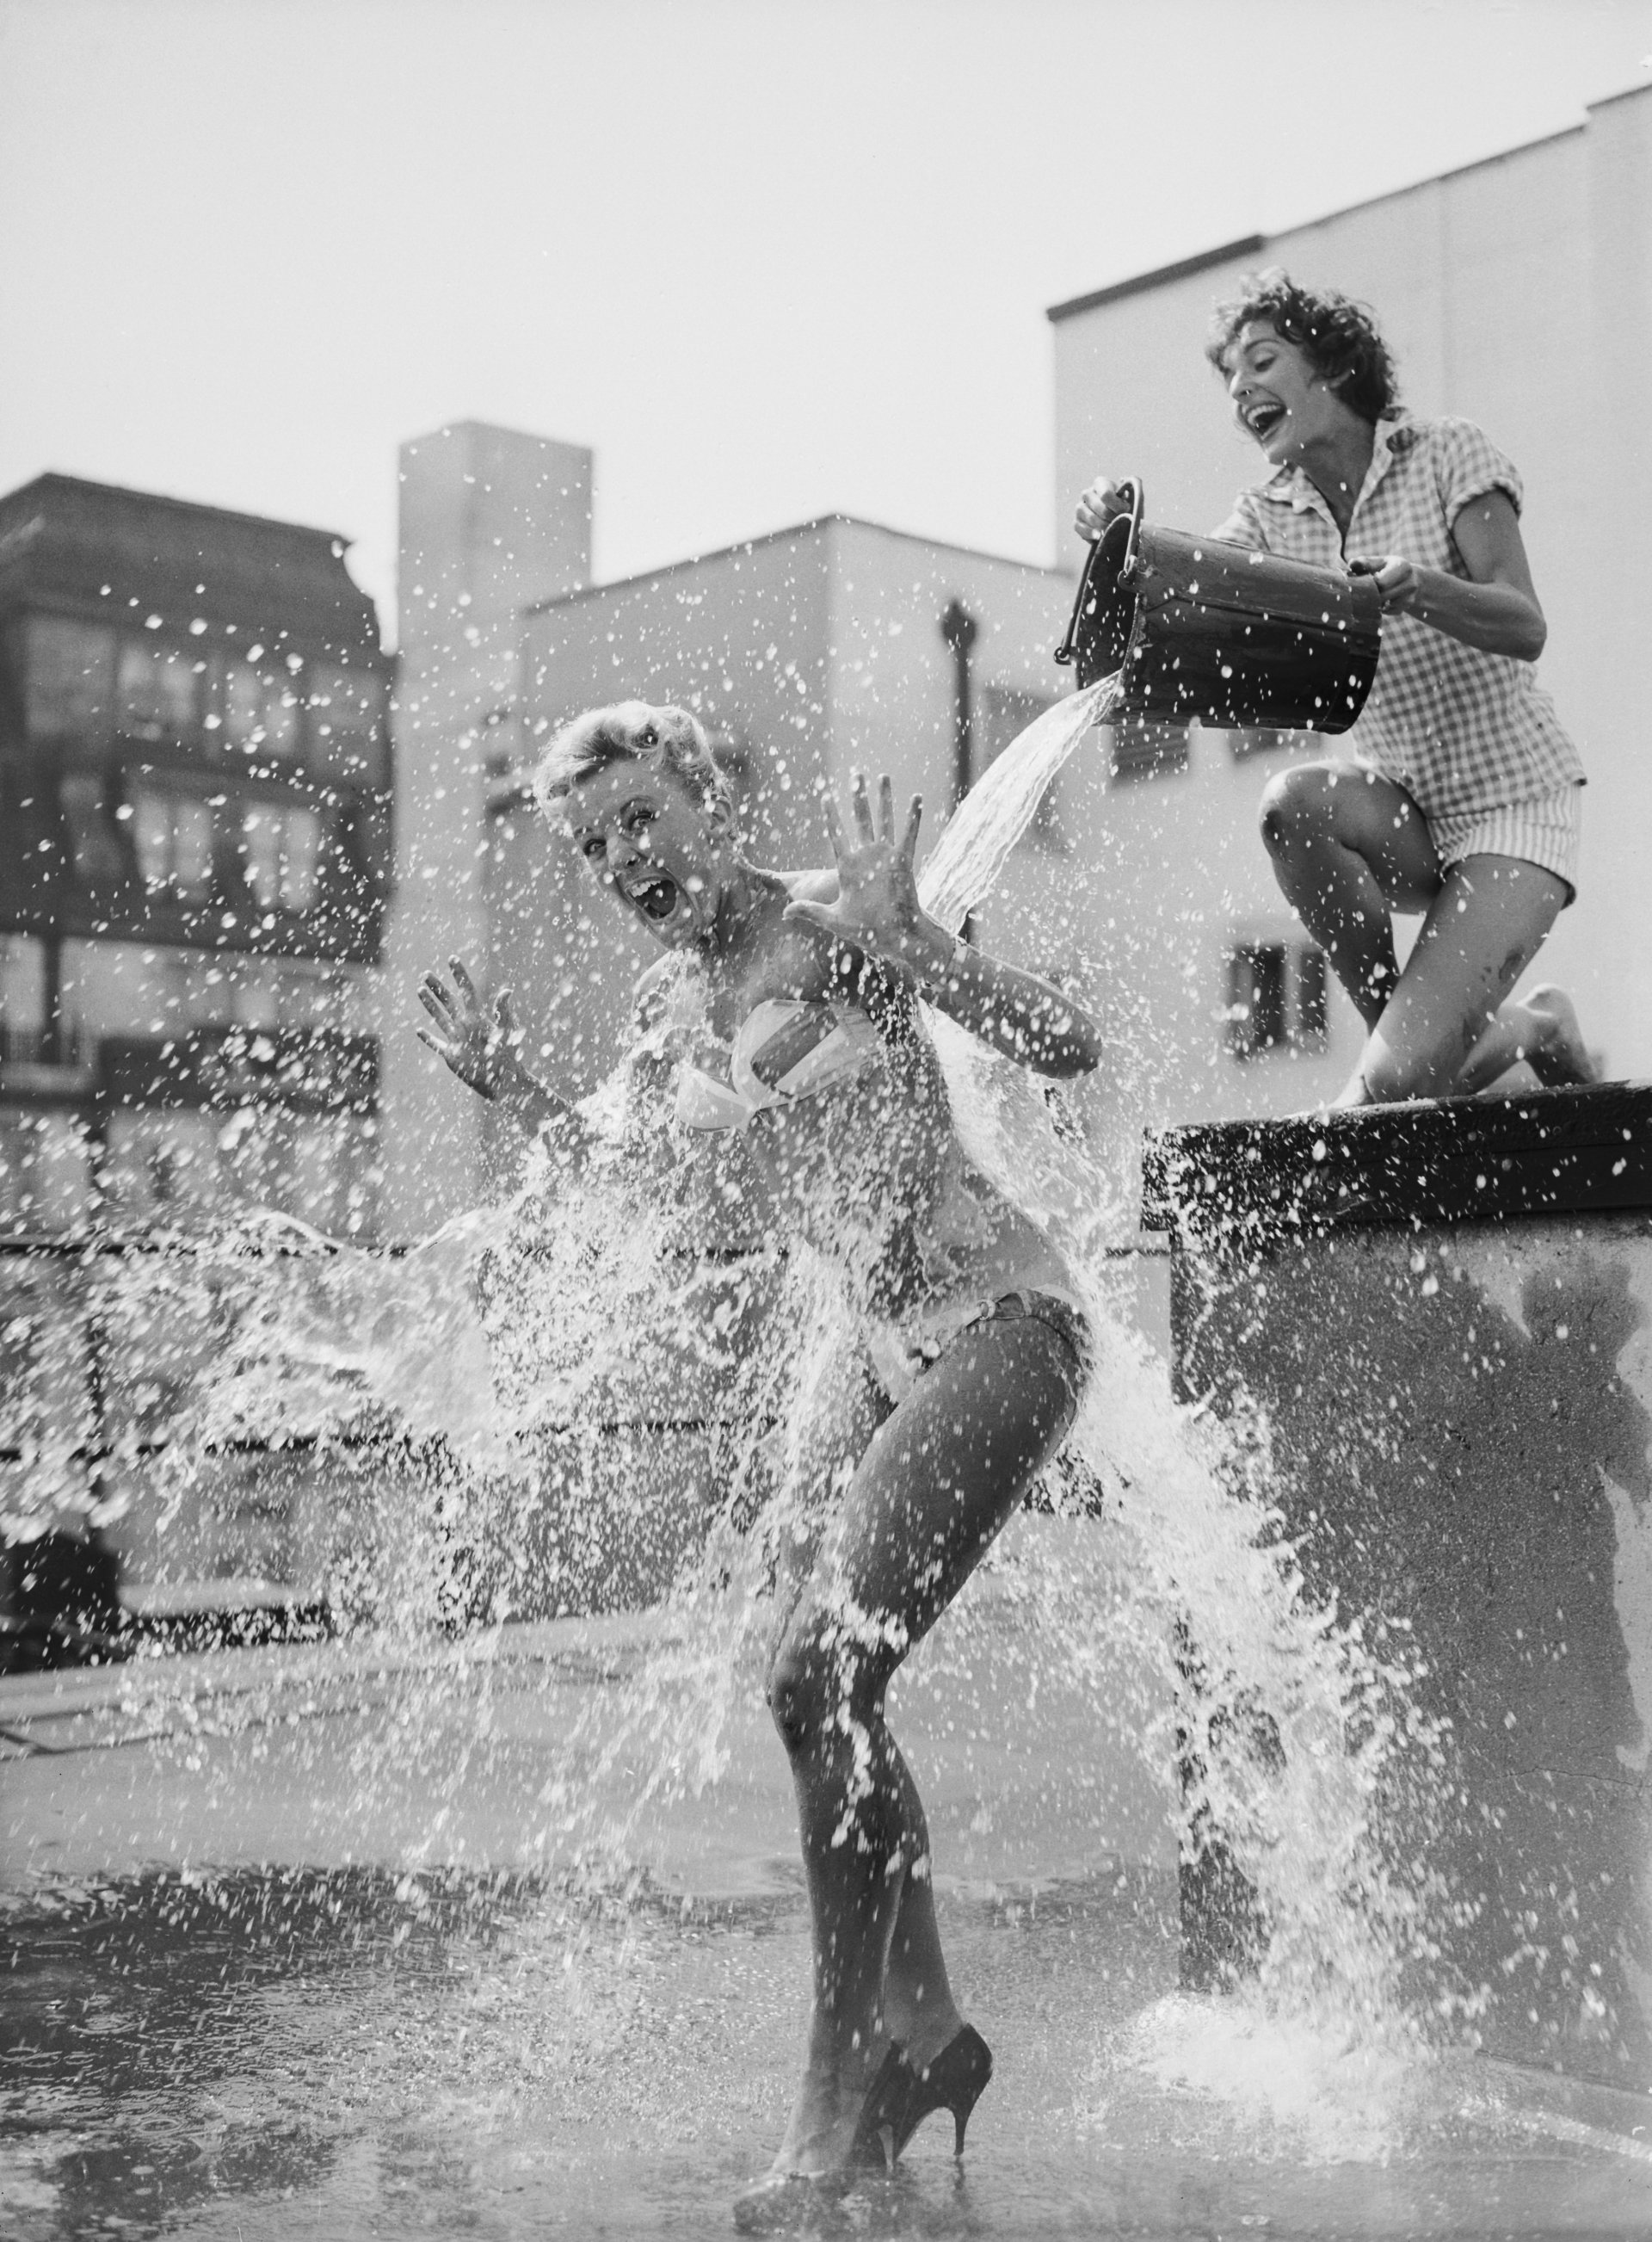 7 юли 1959 г.: Кристин Чайлд и Франсис Пиджън на покрива на театър "Пикадили" по време на пауза в репетициите за "The Crooked Mile". (Снимка от Джон Франкс/Кейстоун/Гети изображения)